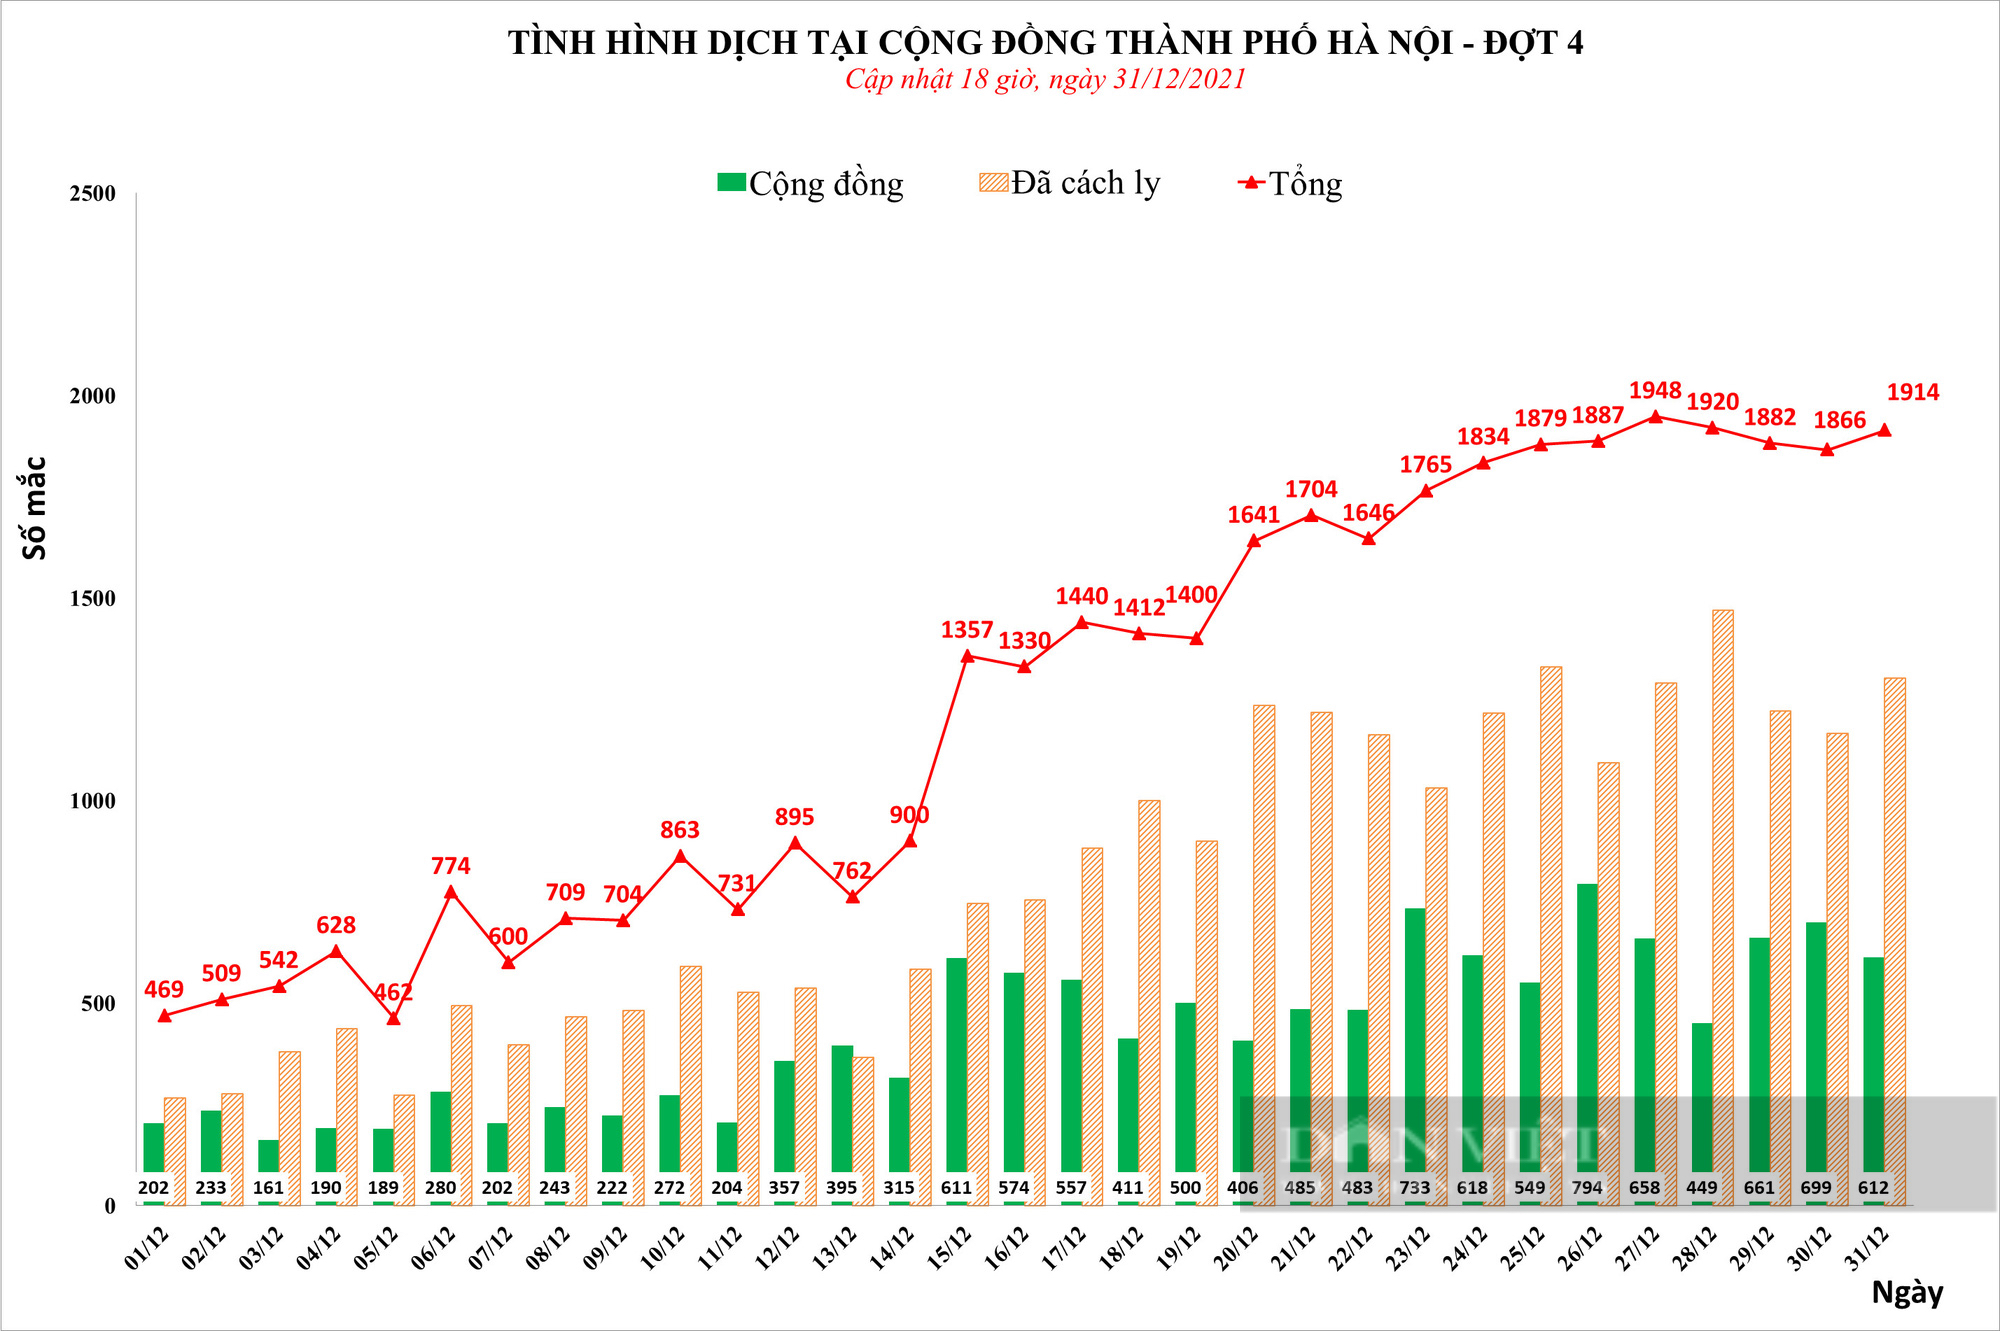 Ngày cuối cùng của năm 2021, Hà Nội ghi nhận hơn 1.900 ca nhiễm Covid-19 - Ảnh 1.